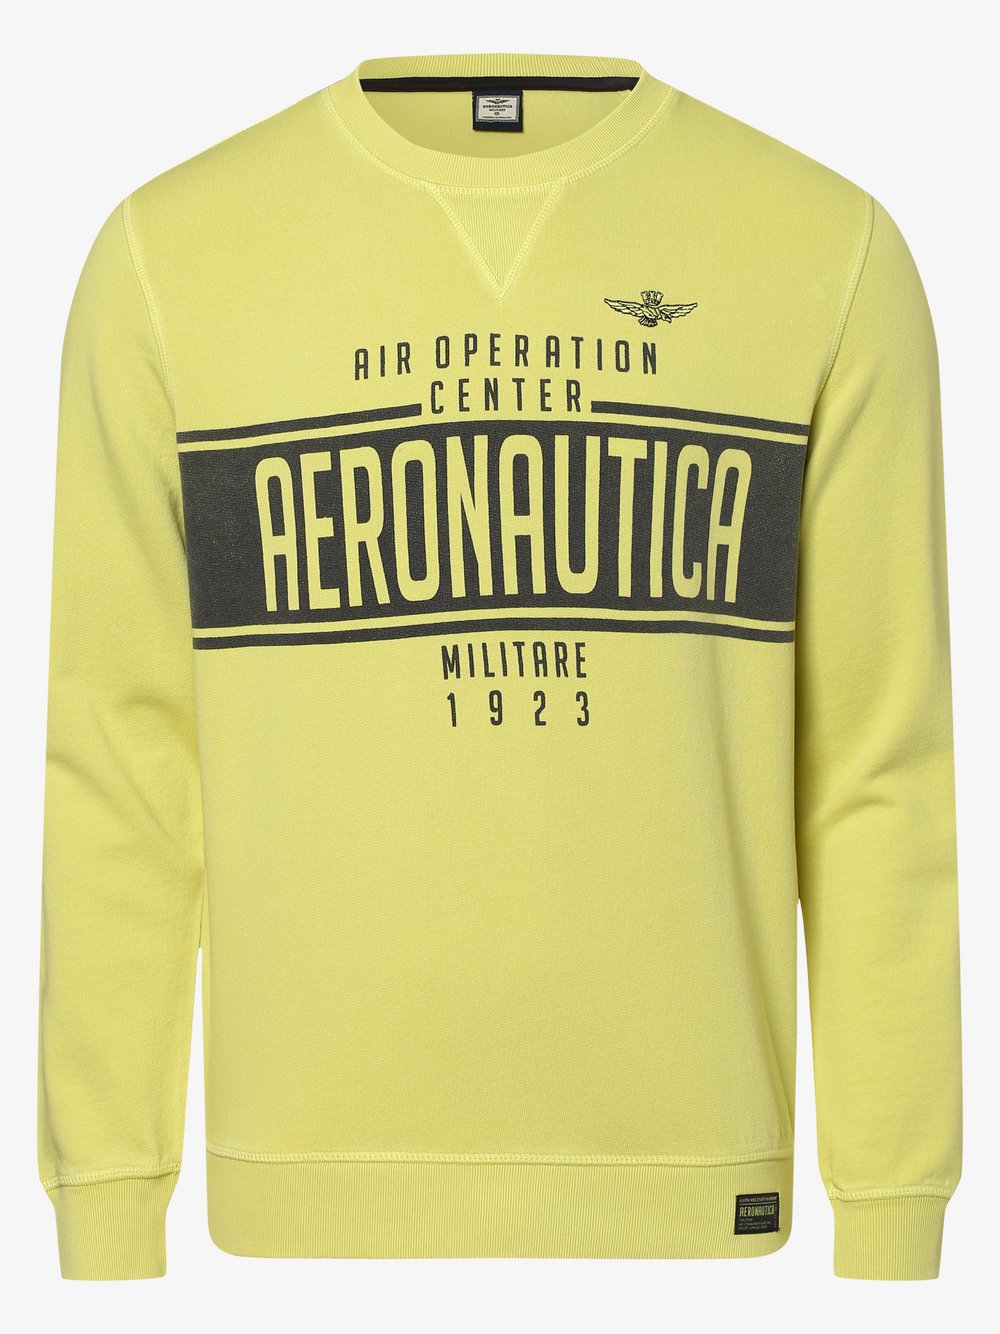 Aeronautica - Męska bluza nierozpinana, żółty